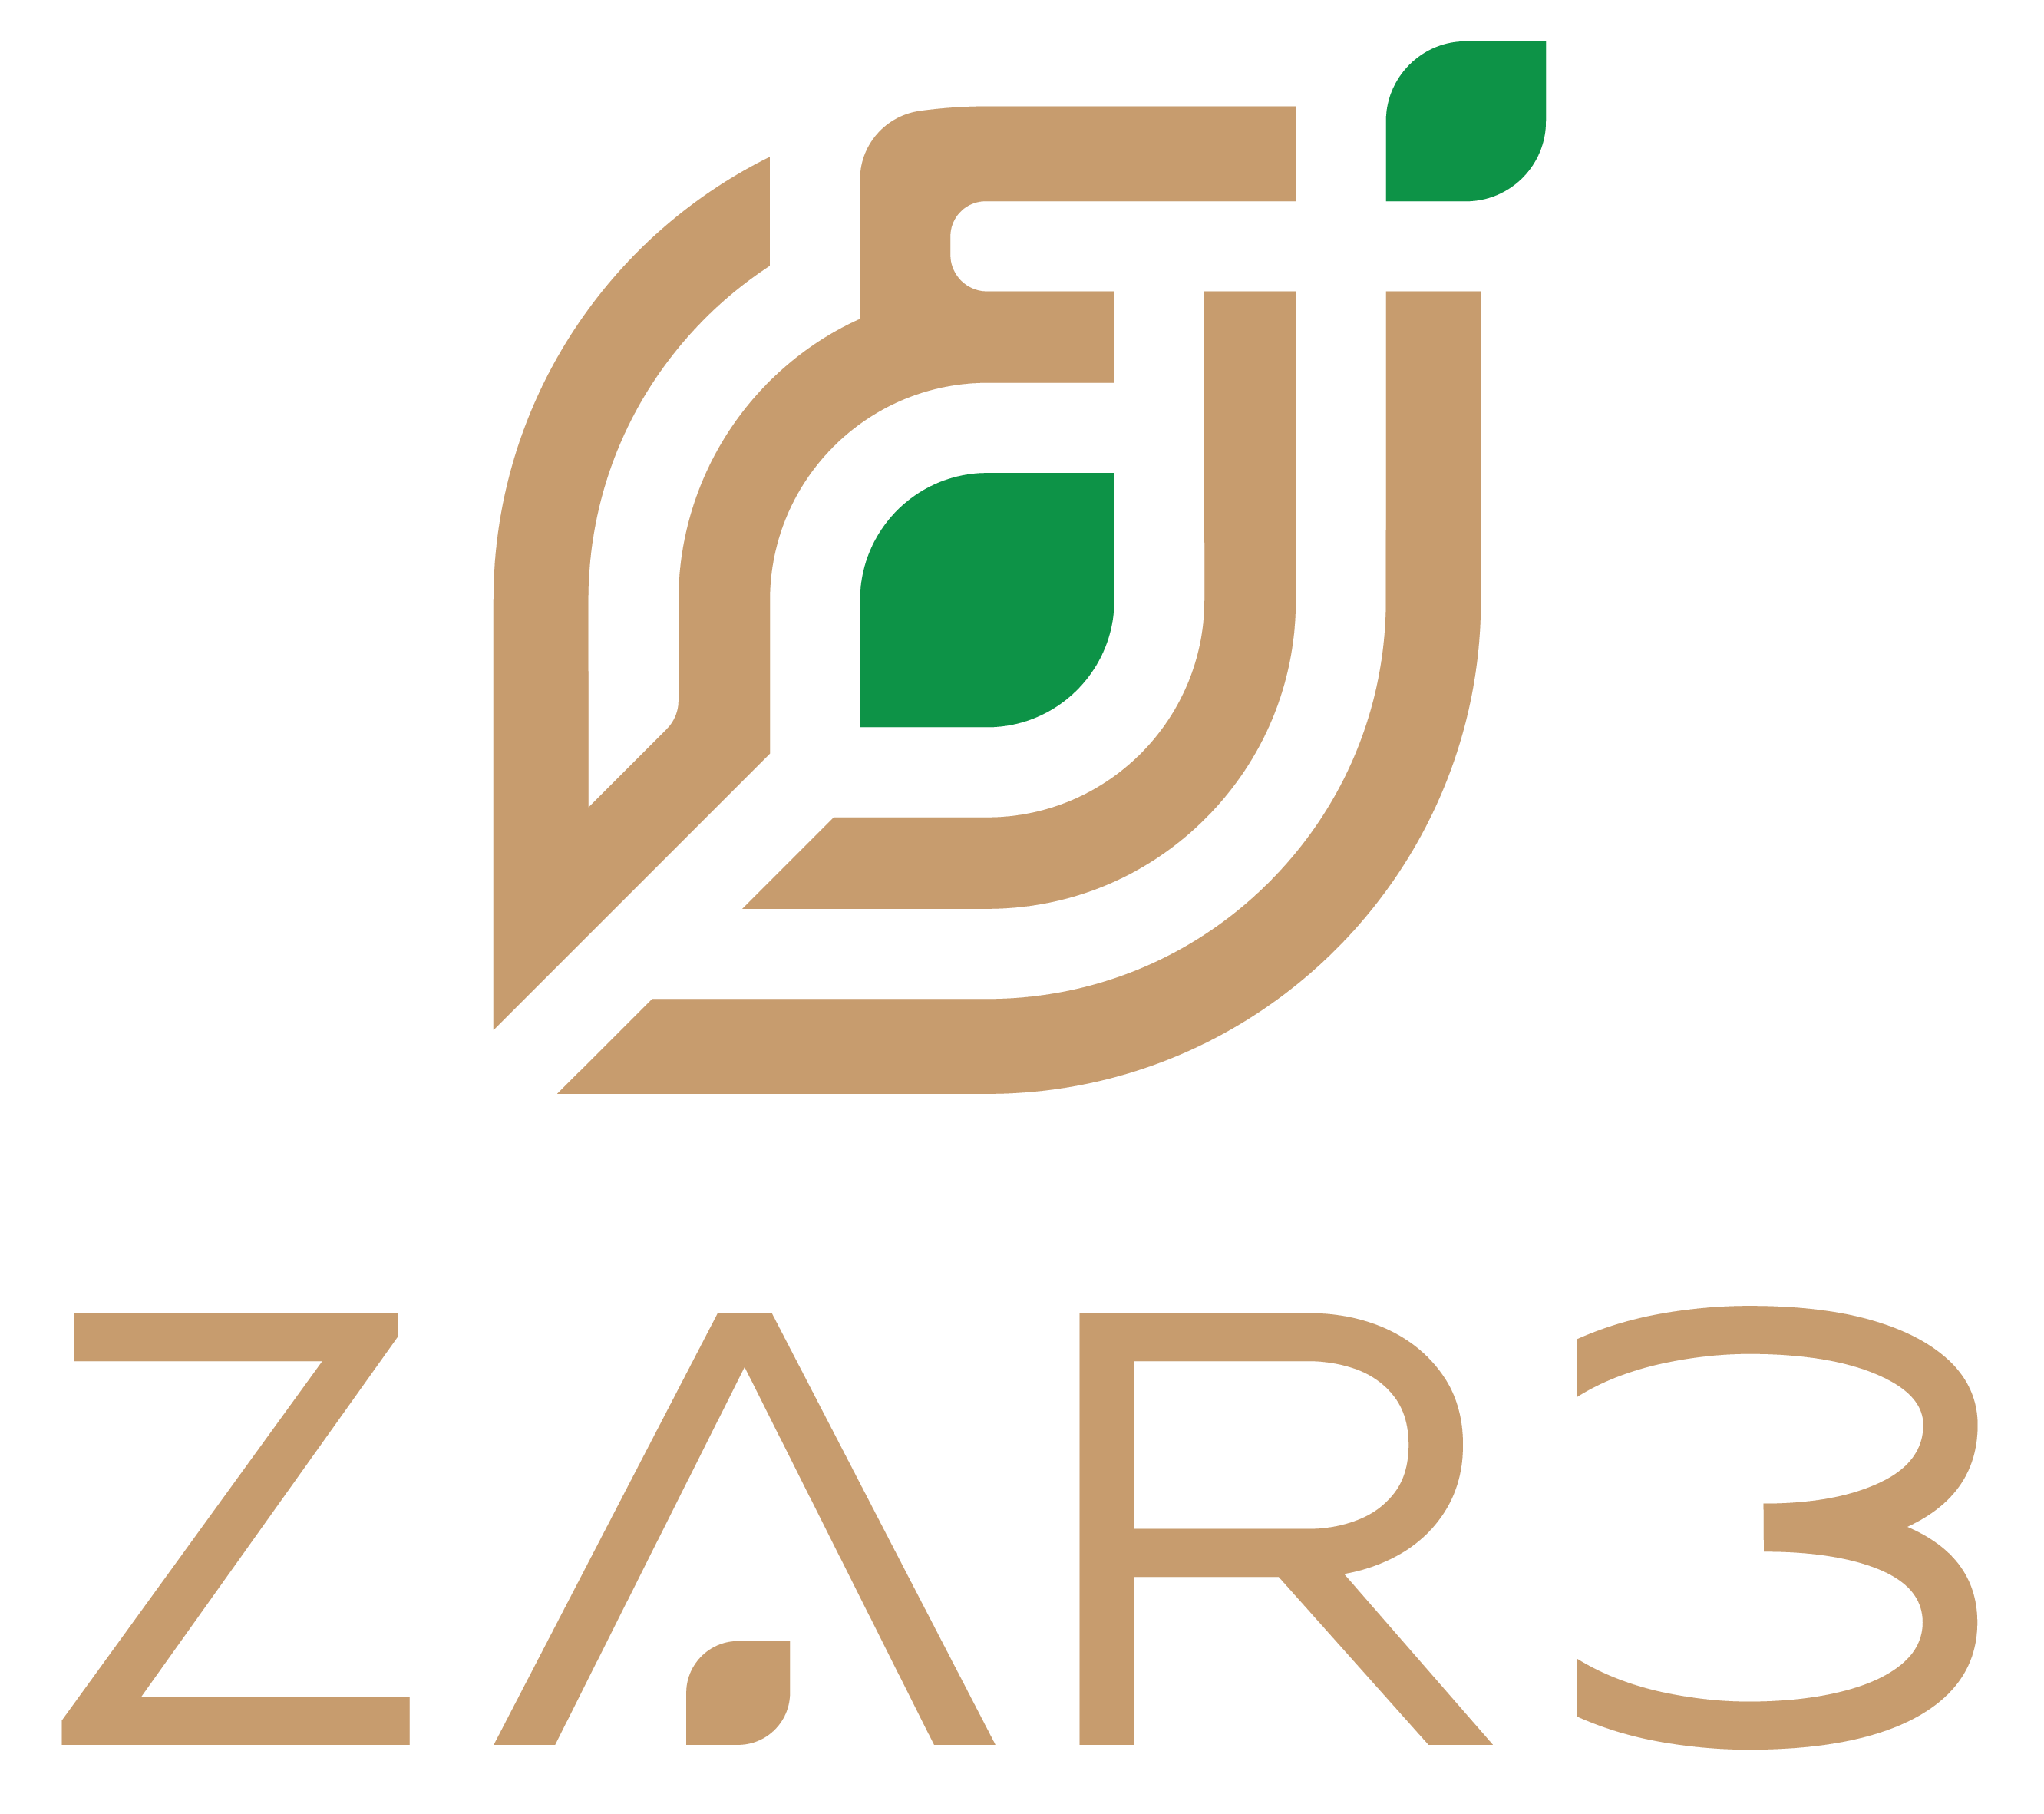 Zar3